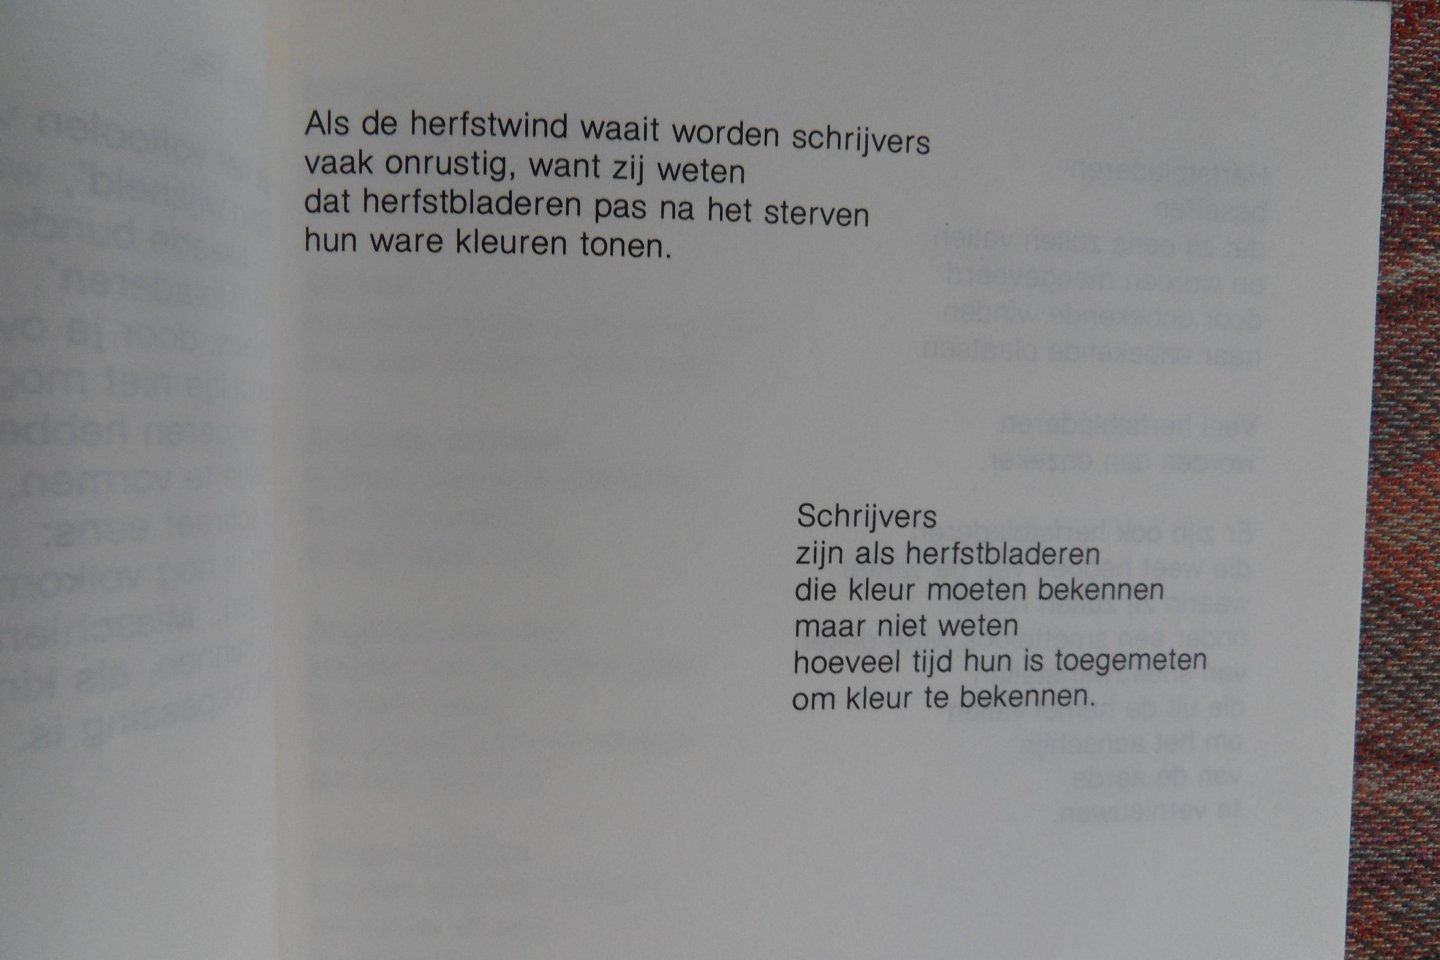 Oremus, Co. [ oktober 1920 - maart 1988 ]. - De Laatste Herfstbladeren. - Gedichtenbundel ter nagedachtenis van Co Oremus.